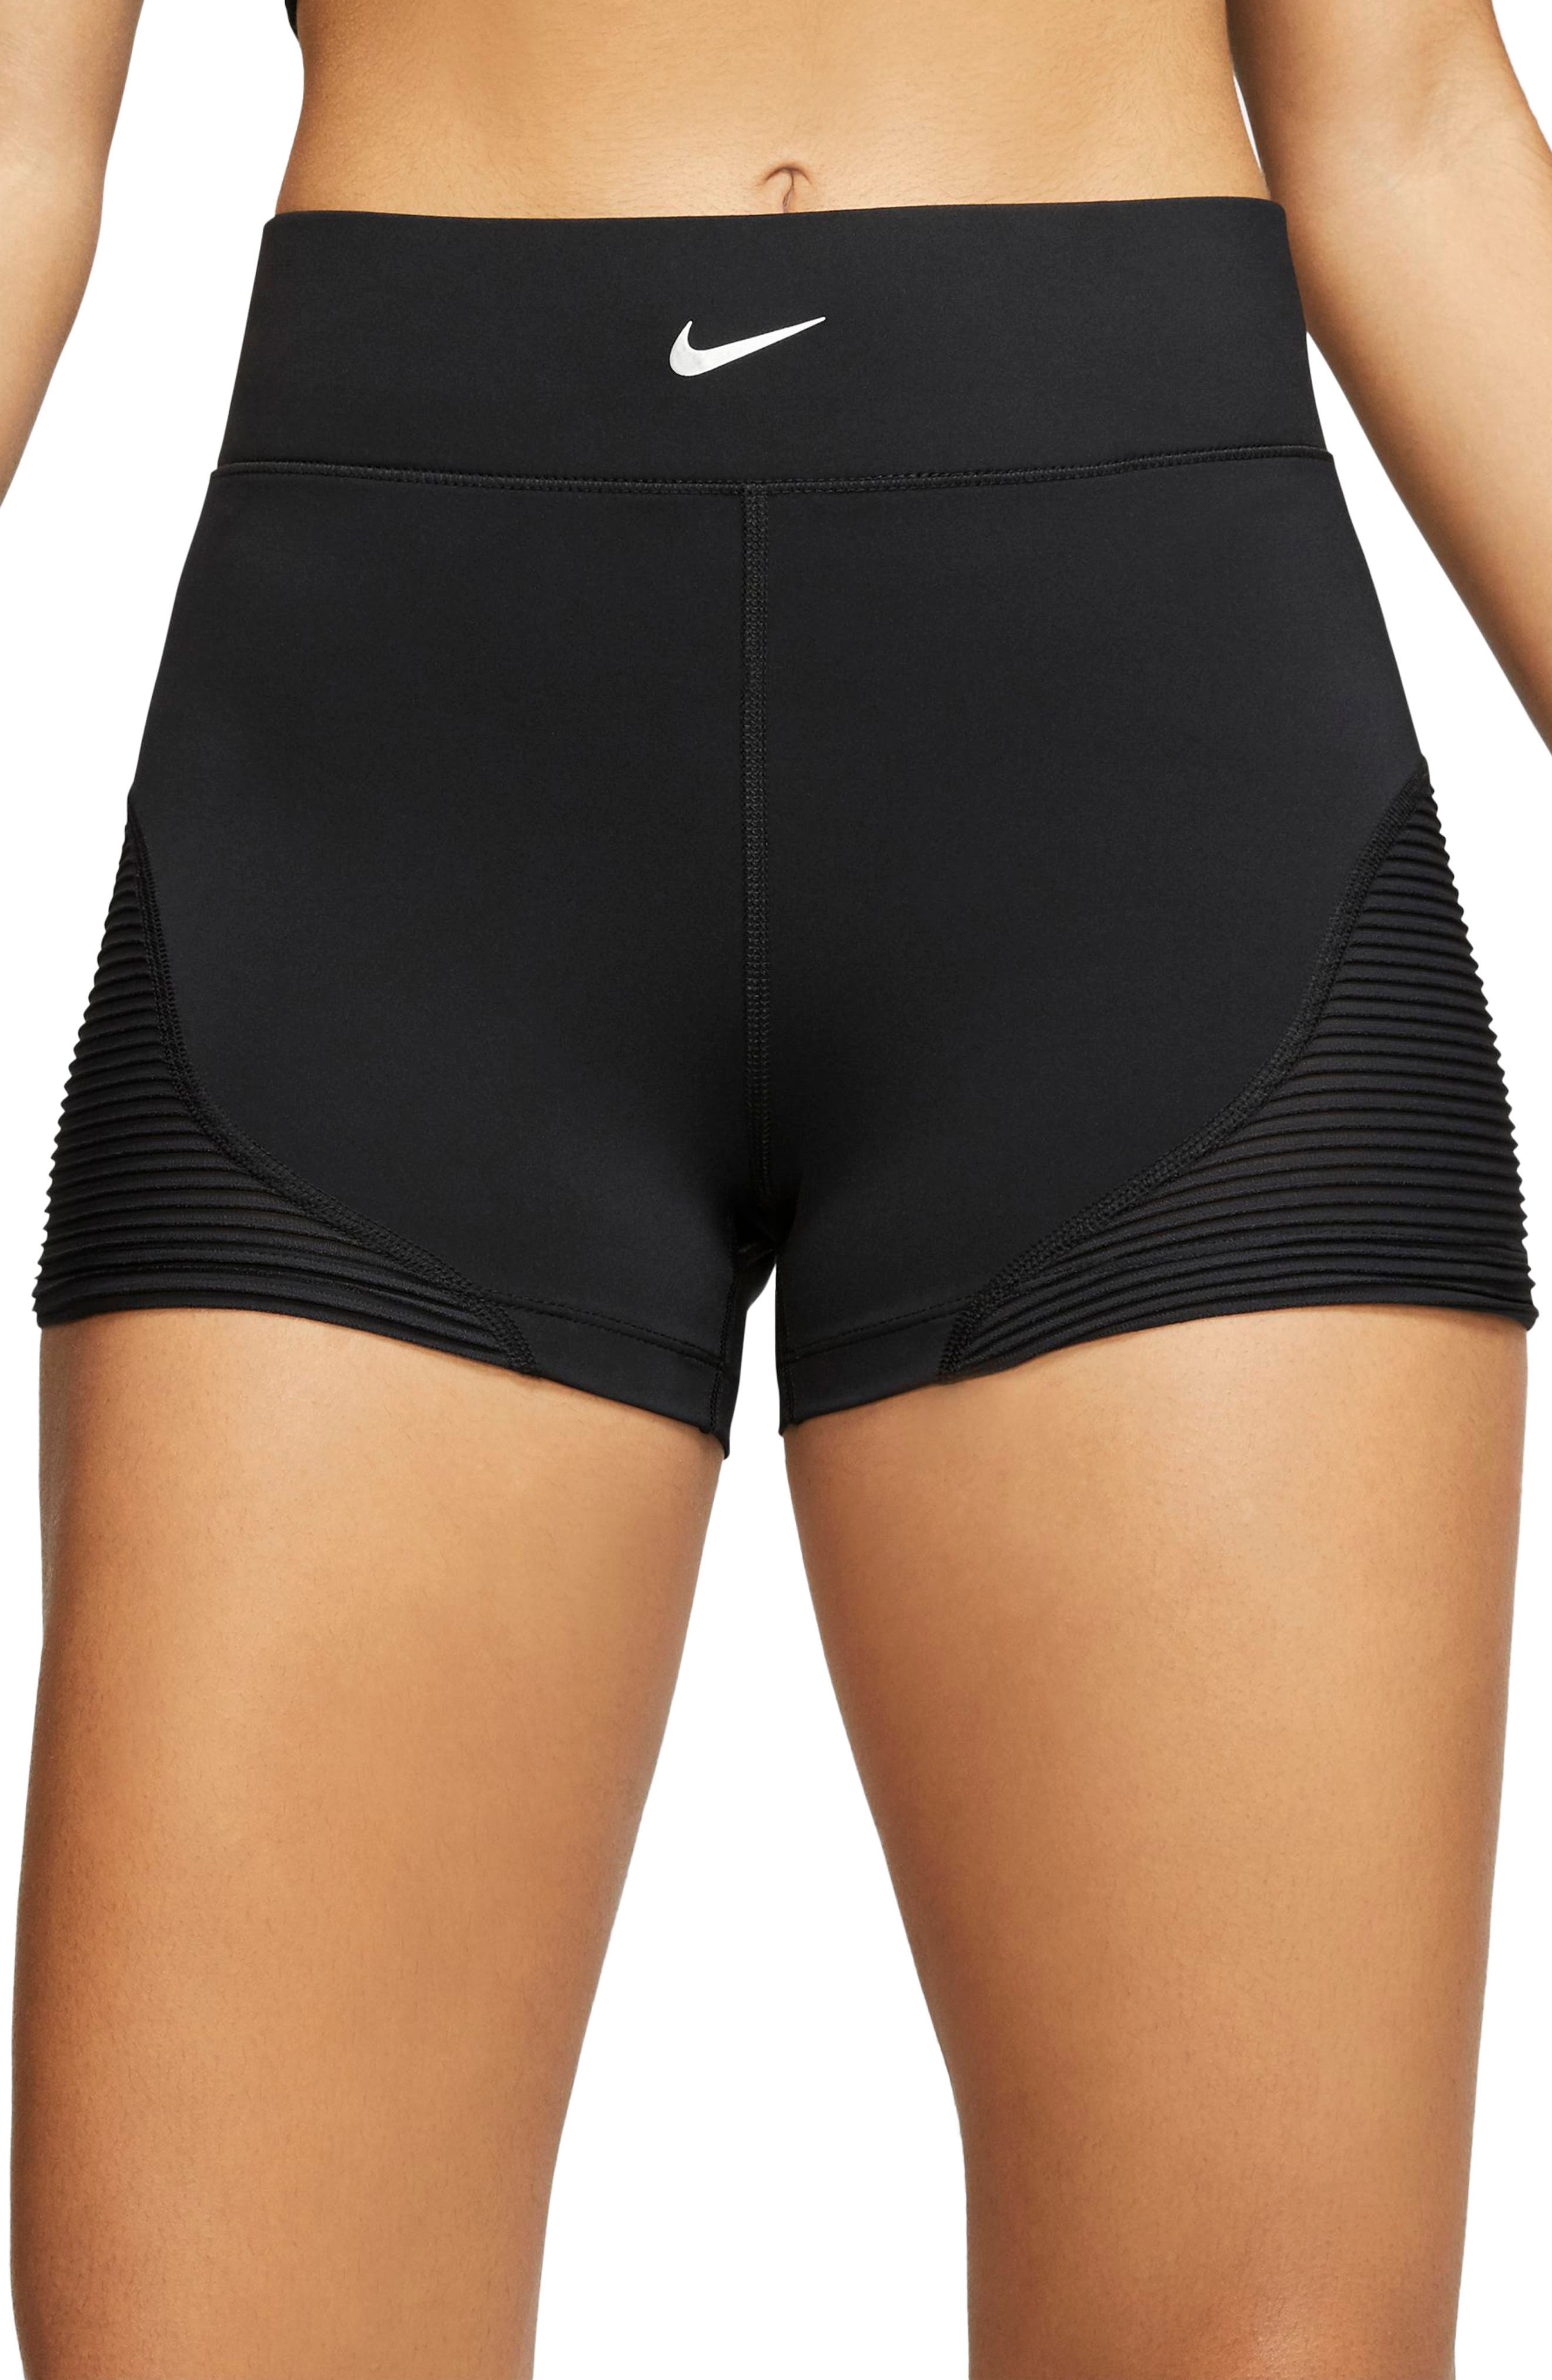 nike women's 3 inch shorts